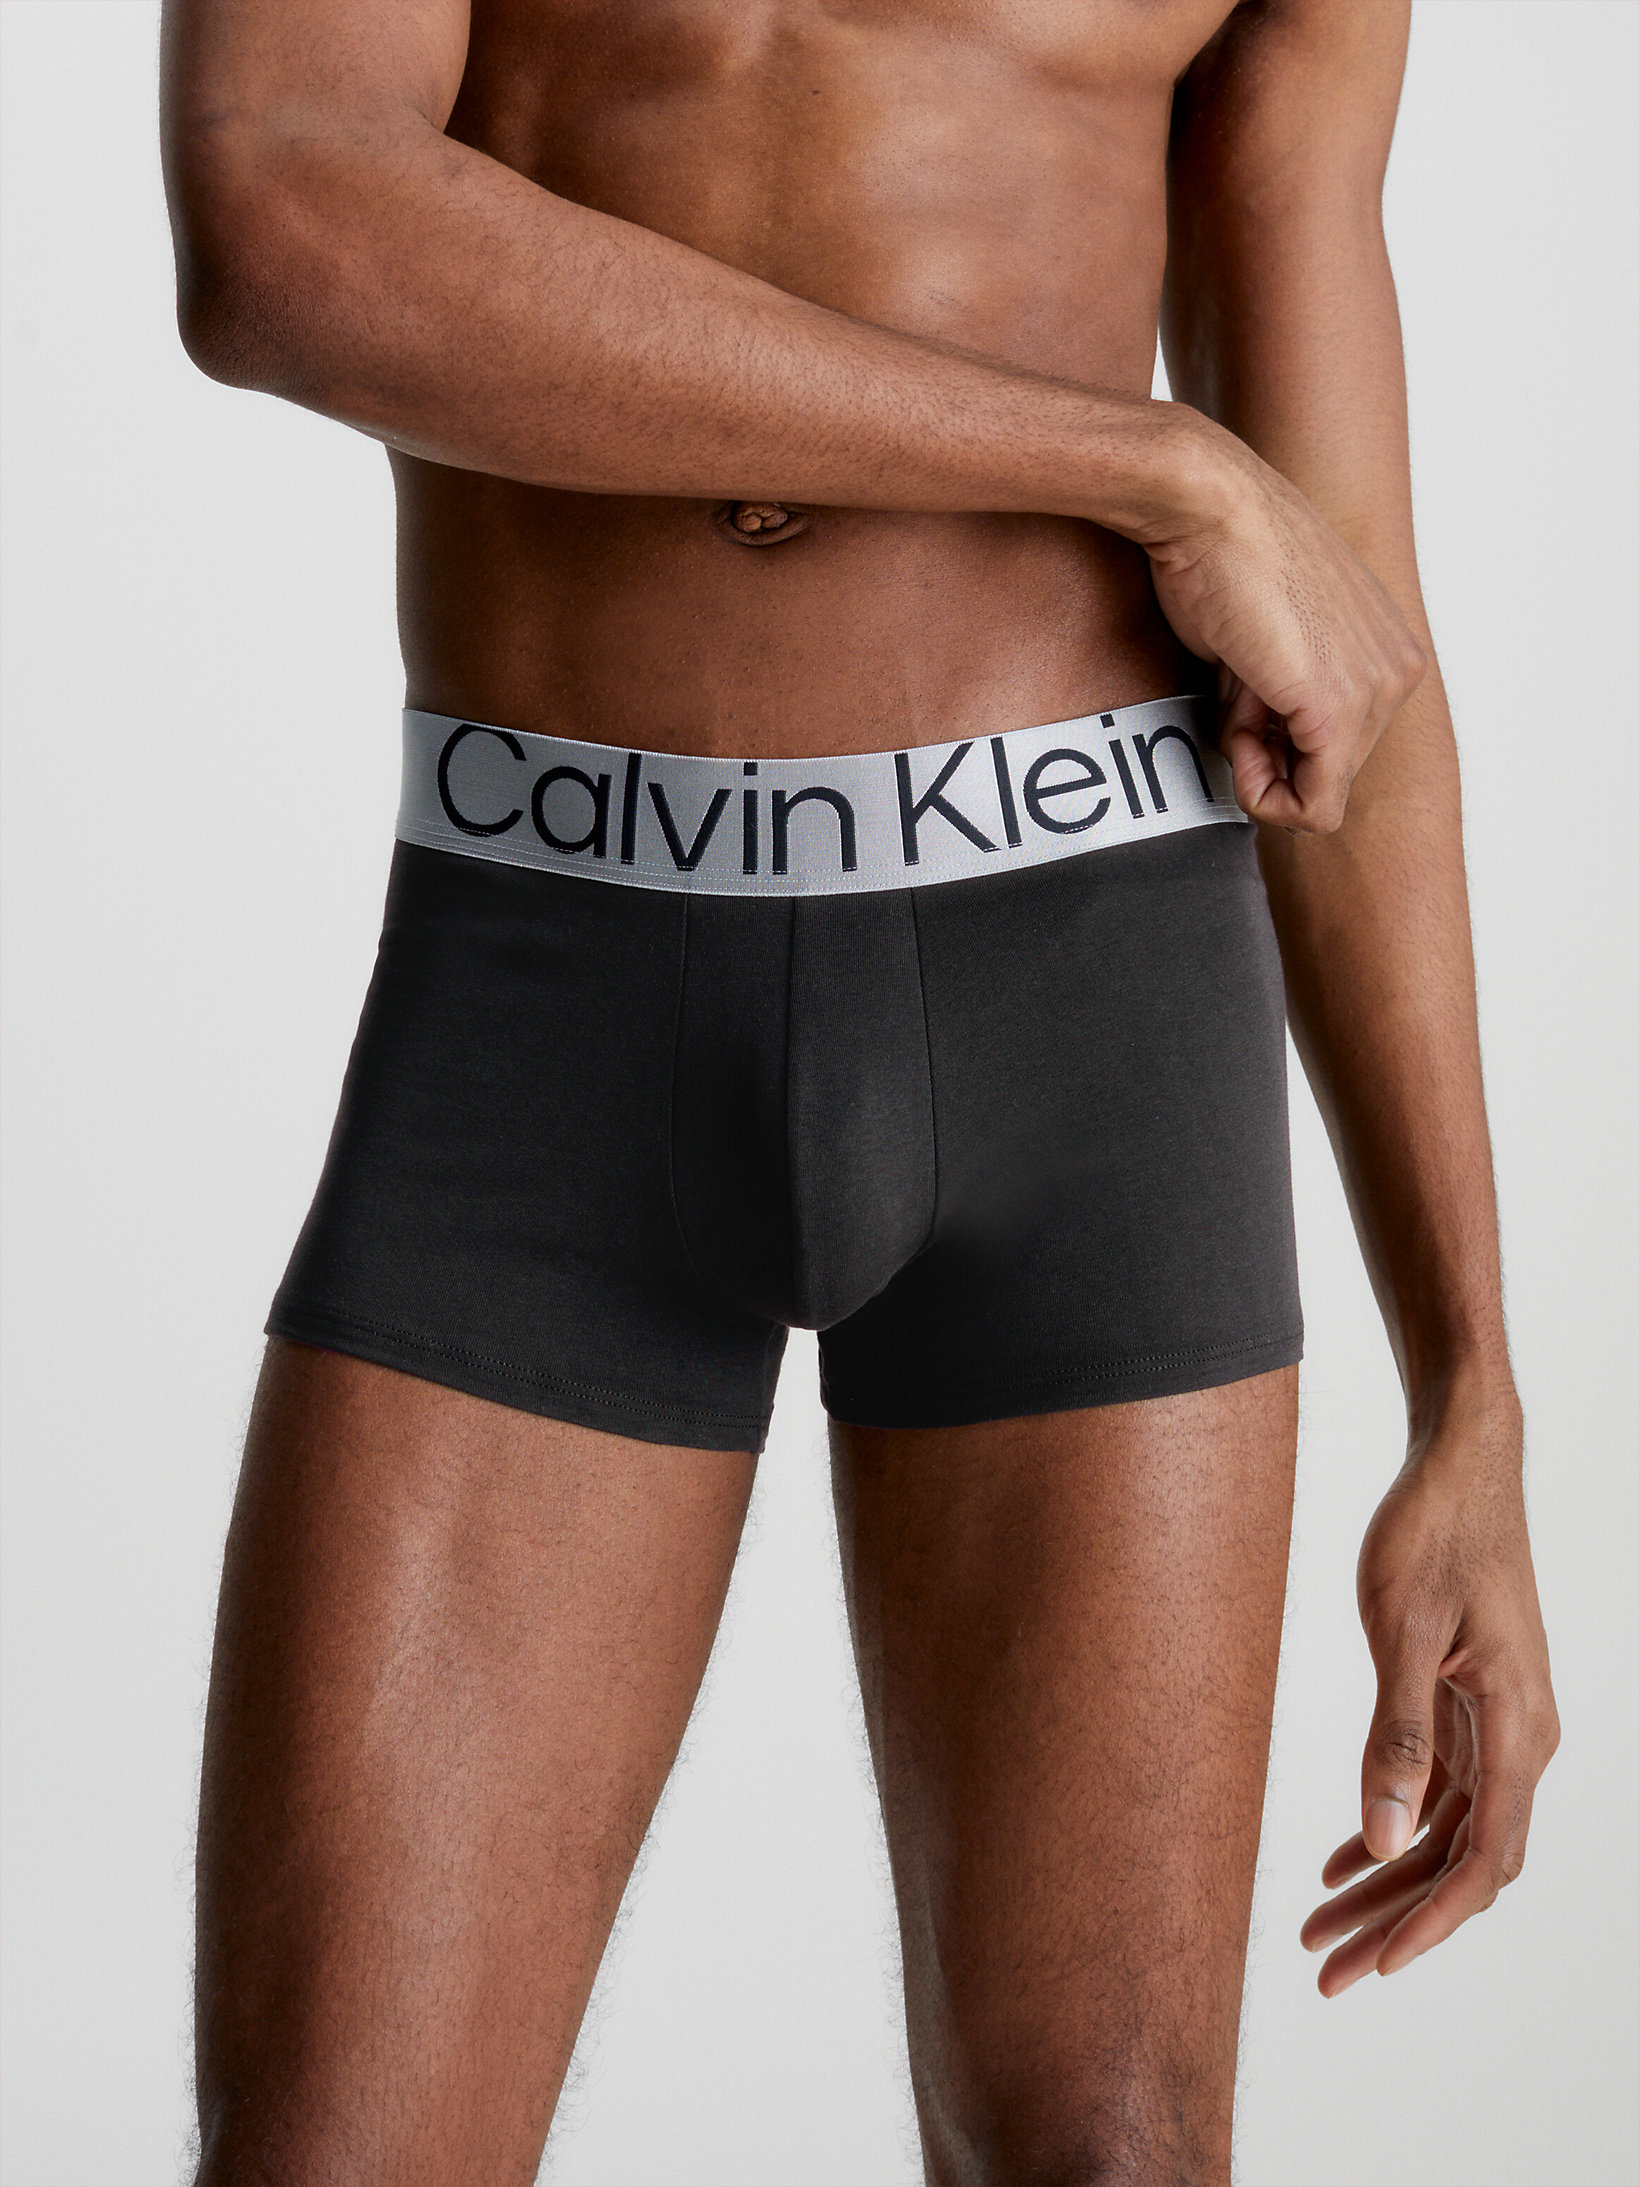 Steel Cotton Calvin Klein Uomo Abbigliamento Intimo Boxer shorts Boxer shorts aderenti Boxer aderenti in confezione da 3 